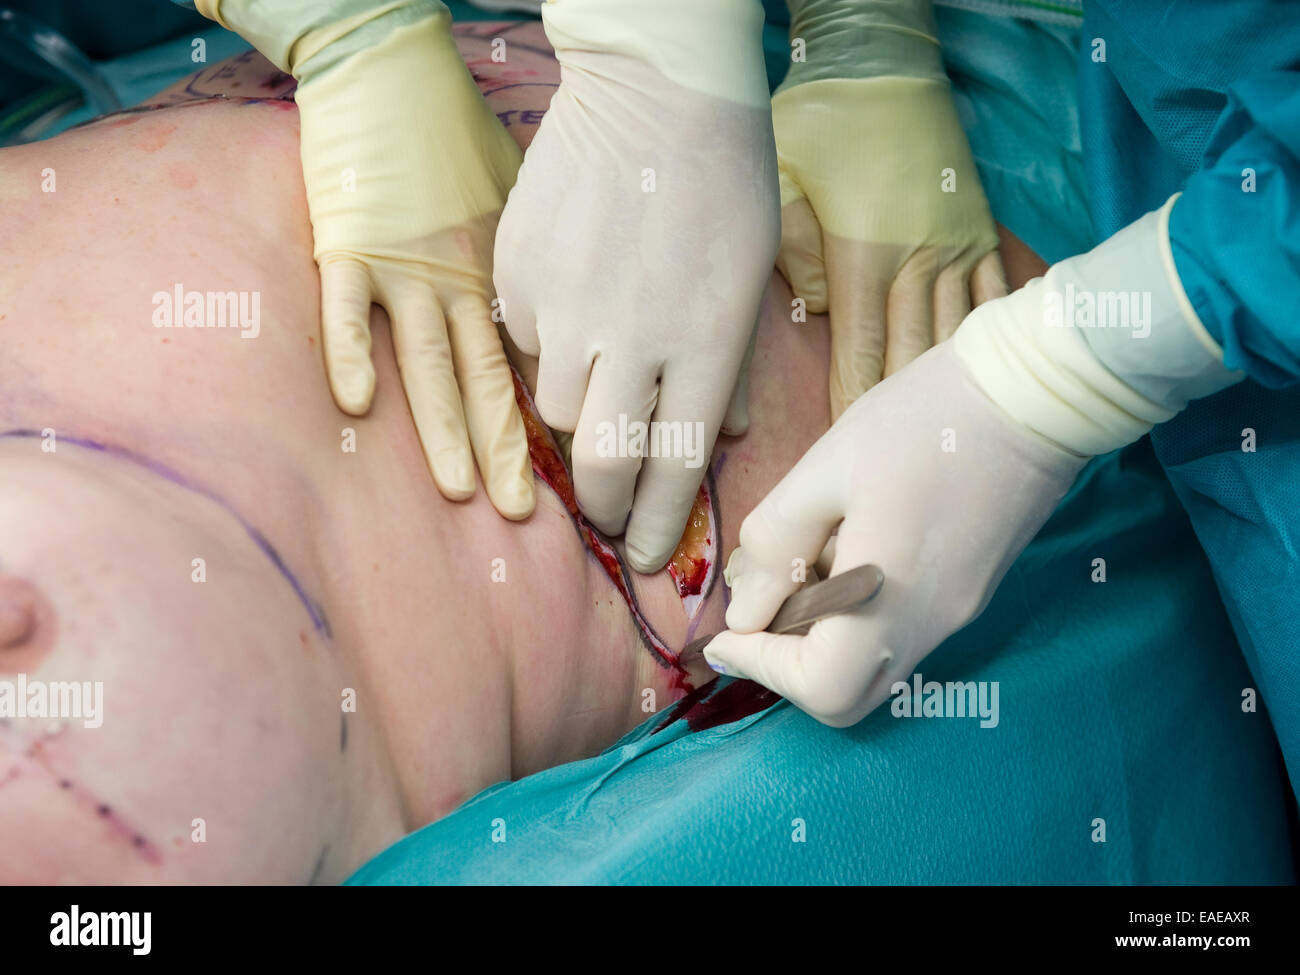 Les chirurgiens sont faire une incision avant qu'ils commencent l'opération un patient Banque D'Images